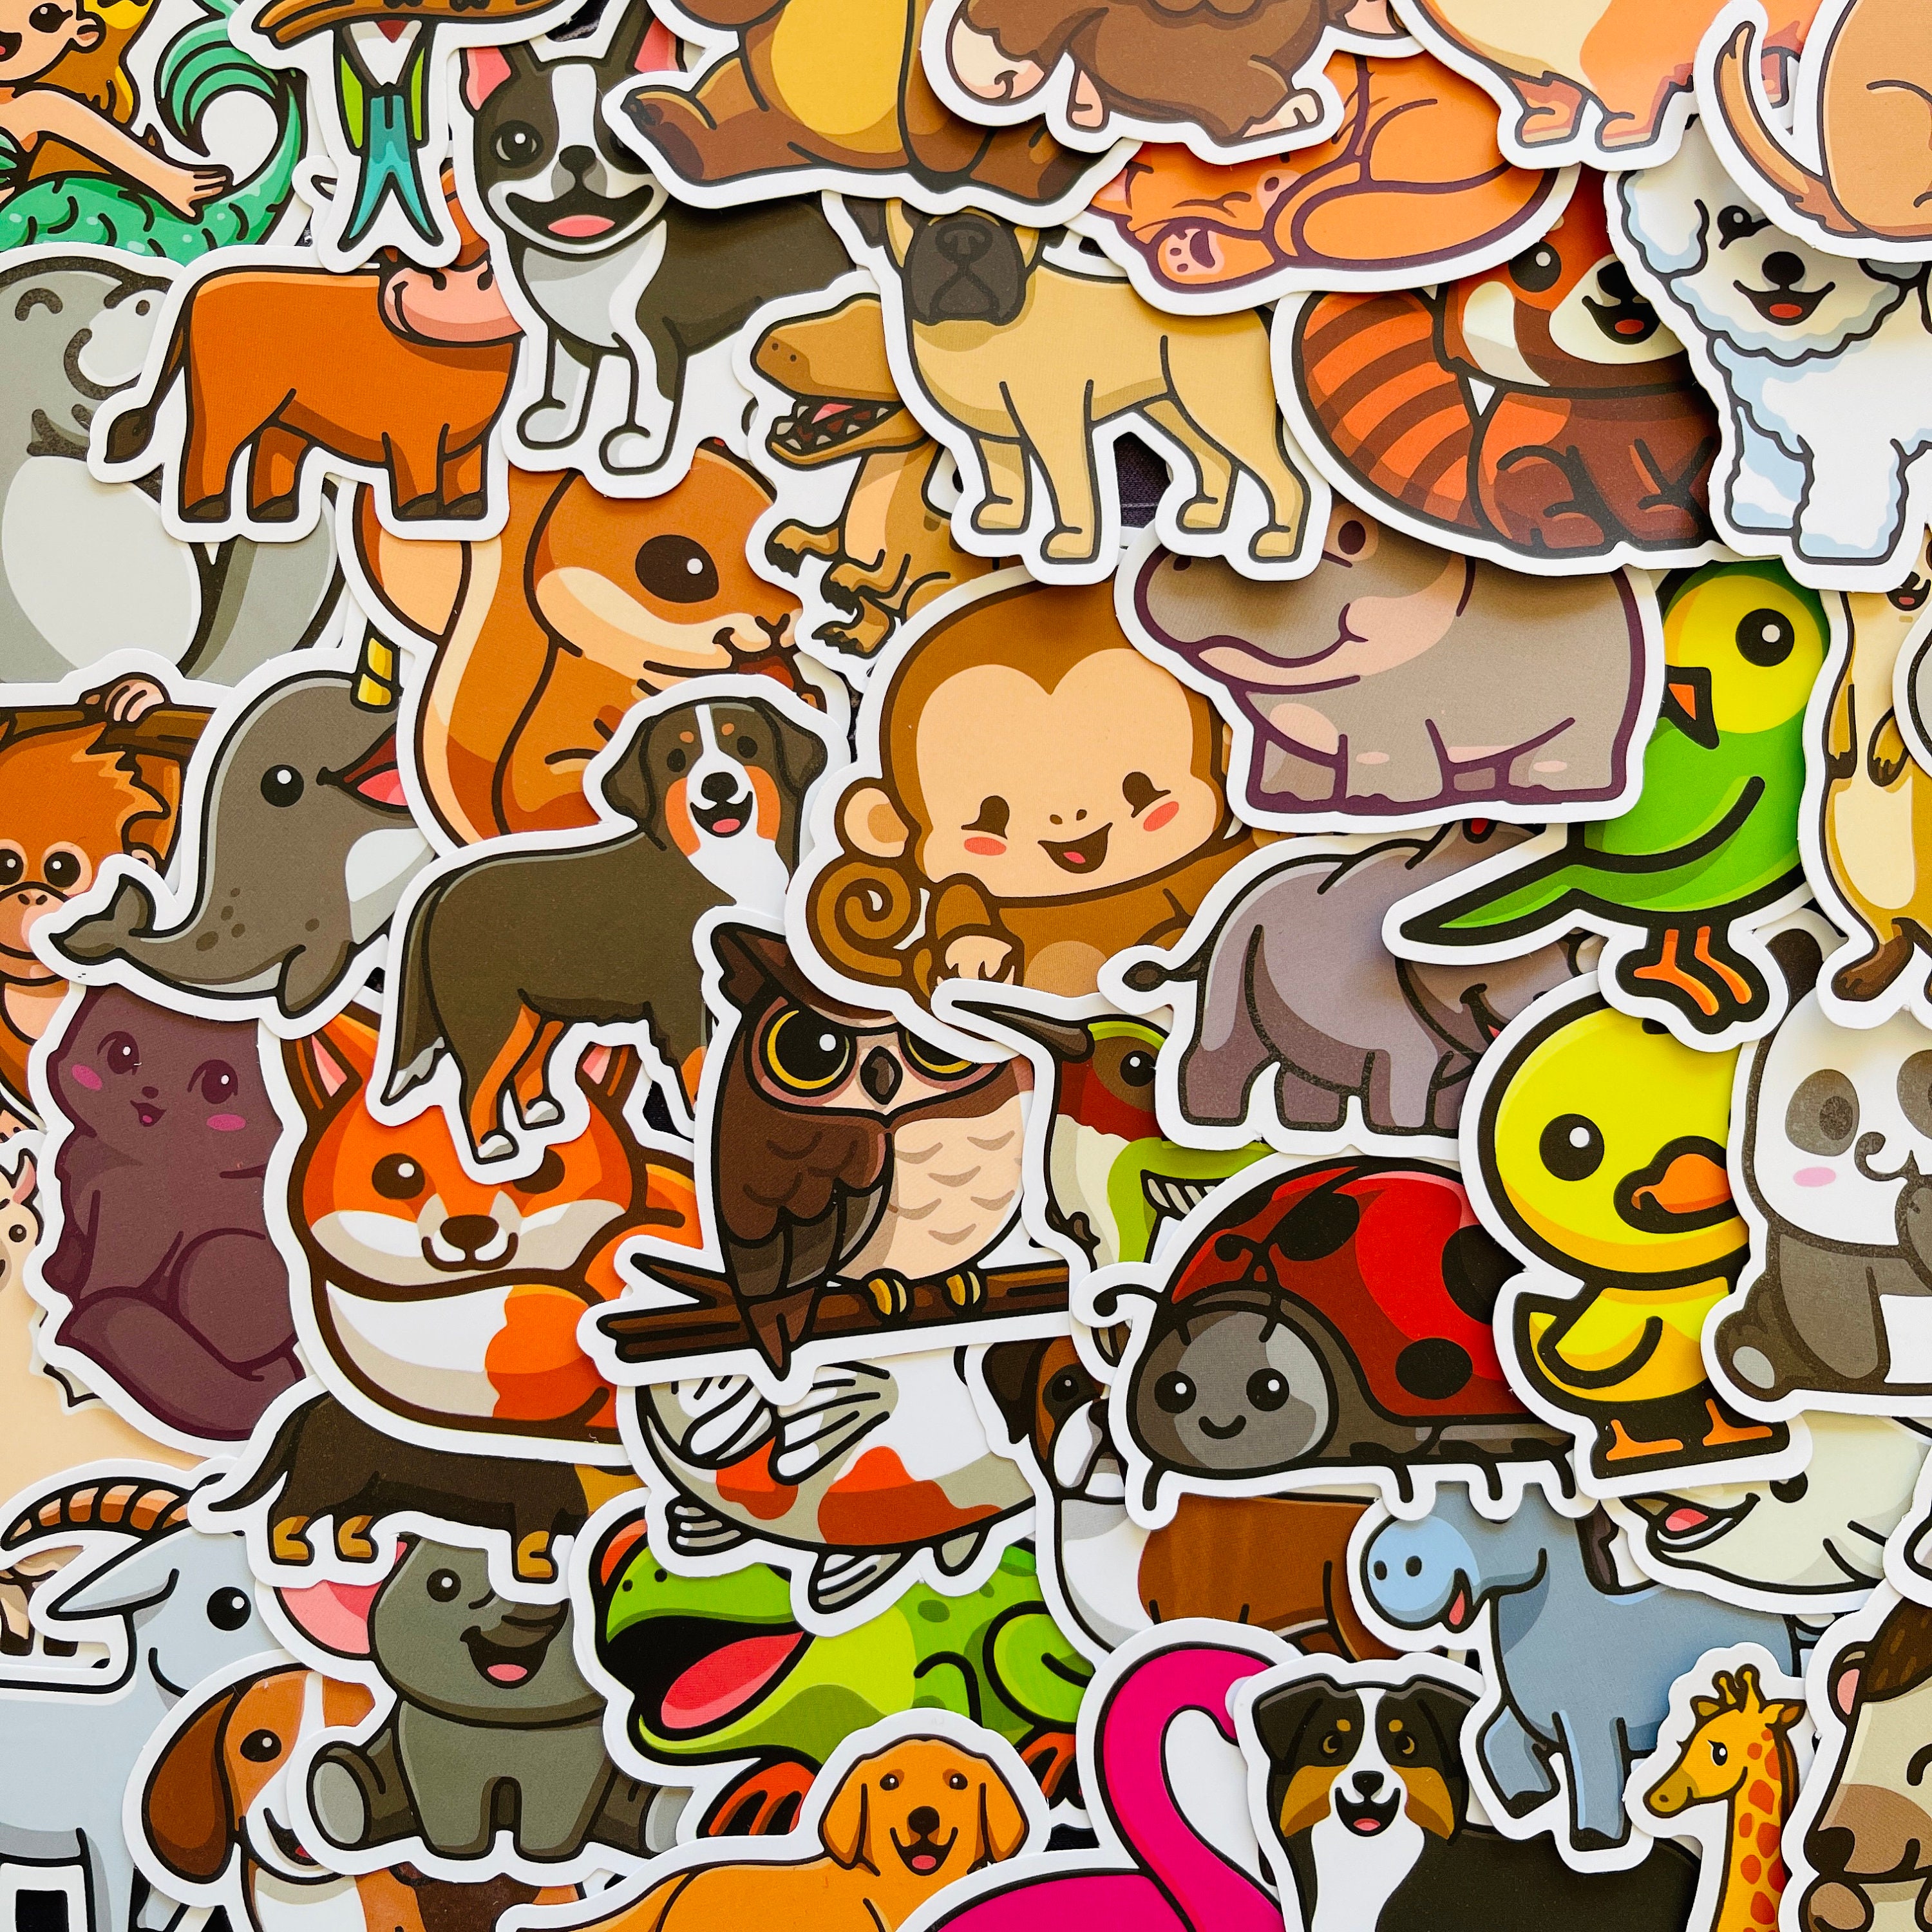 Sticker - Cute Pet Squad Cute Animal Sticker Pack